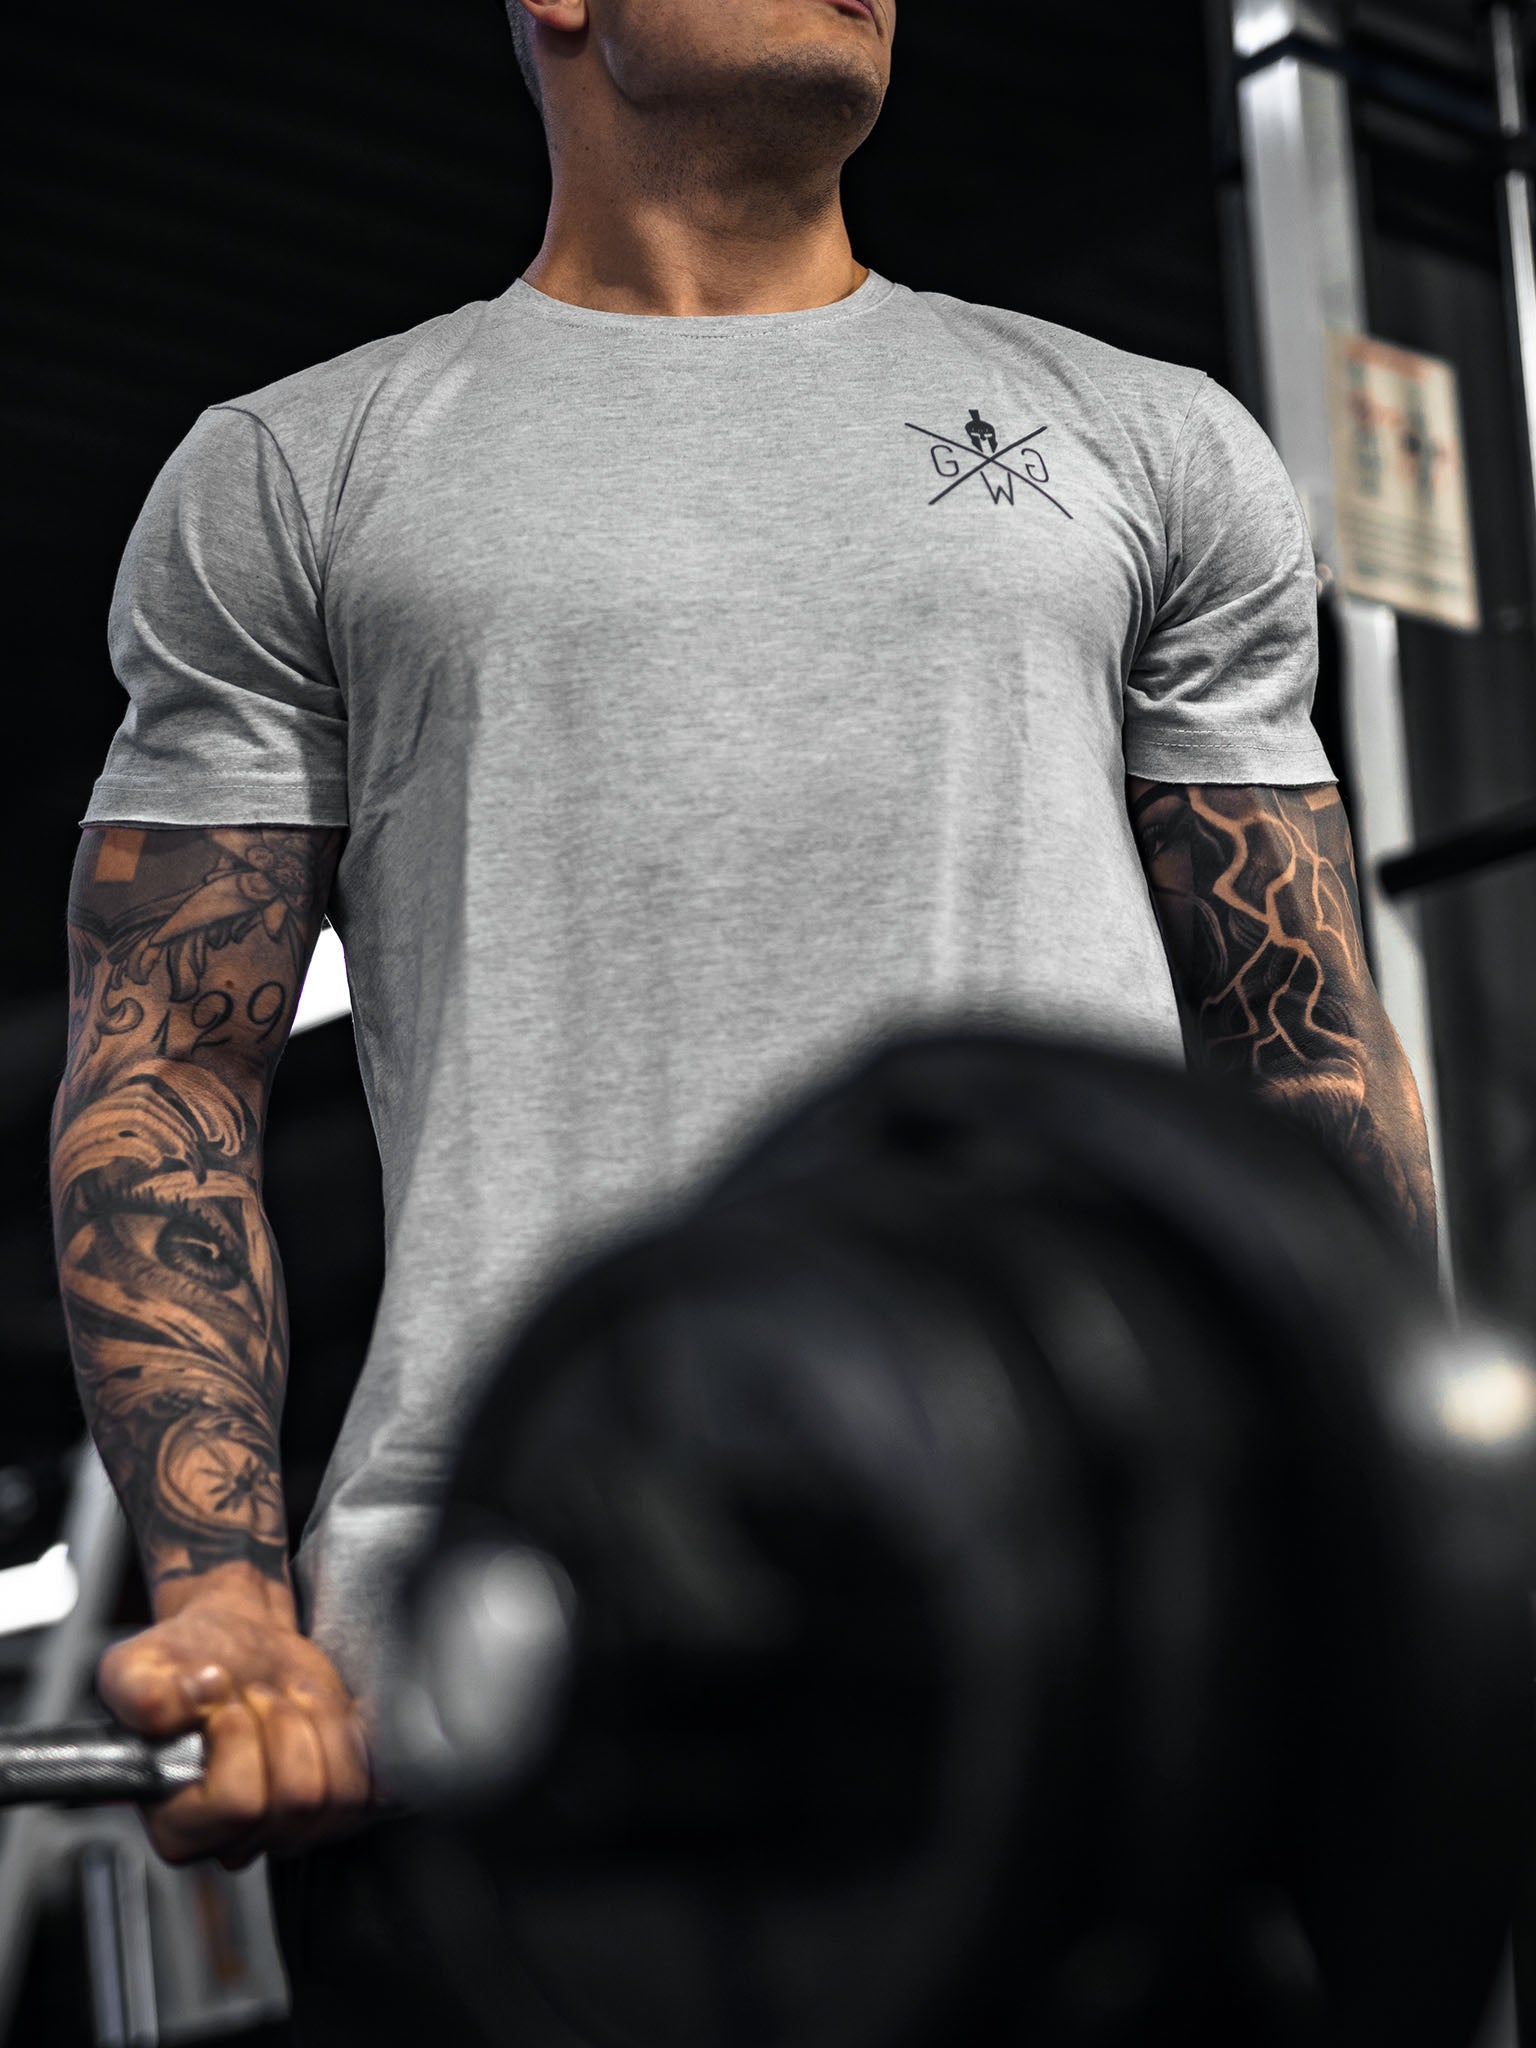 Vielseitiges und bequemes graues T-Shirt von Gym Generation, ideal für Fitnessstudio und Alltag.